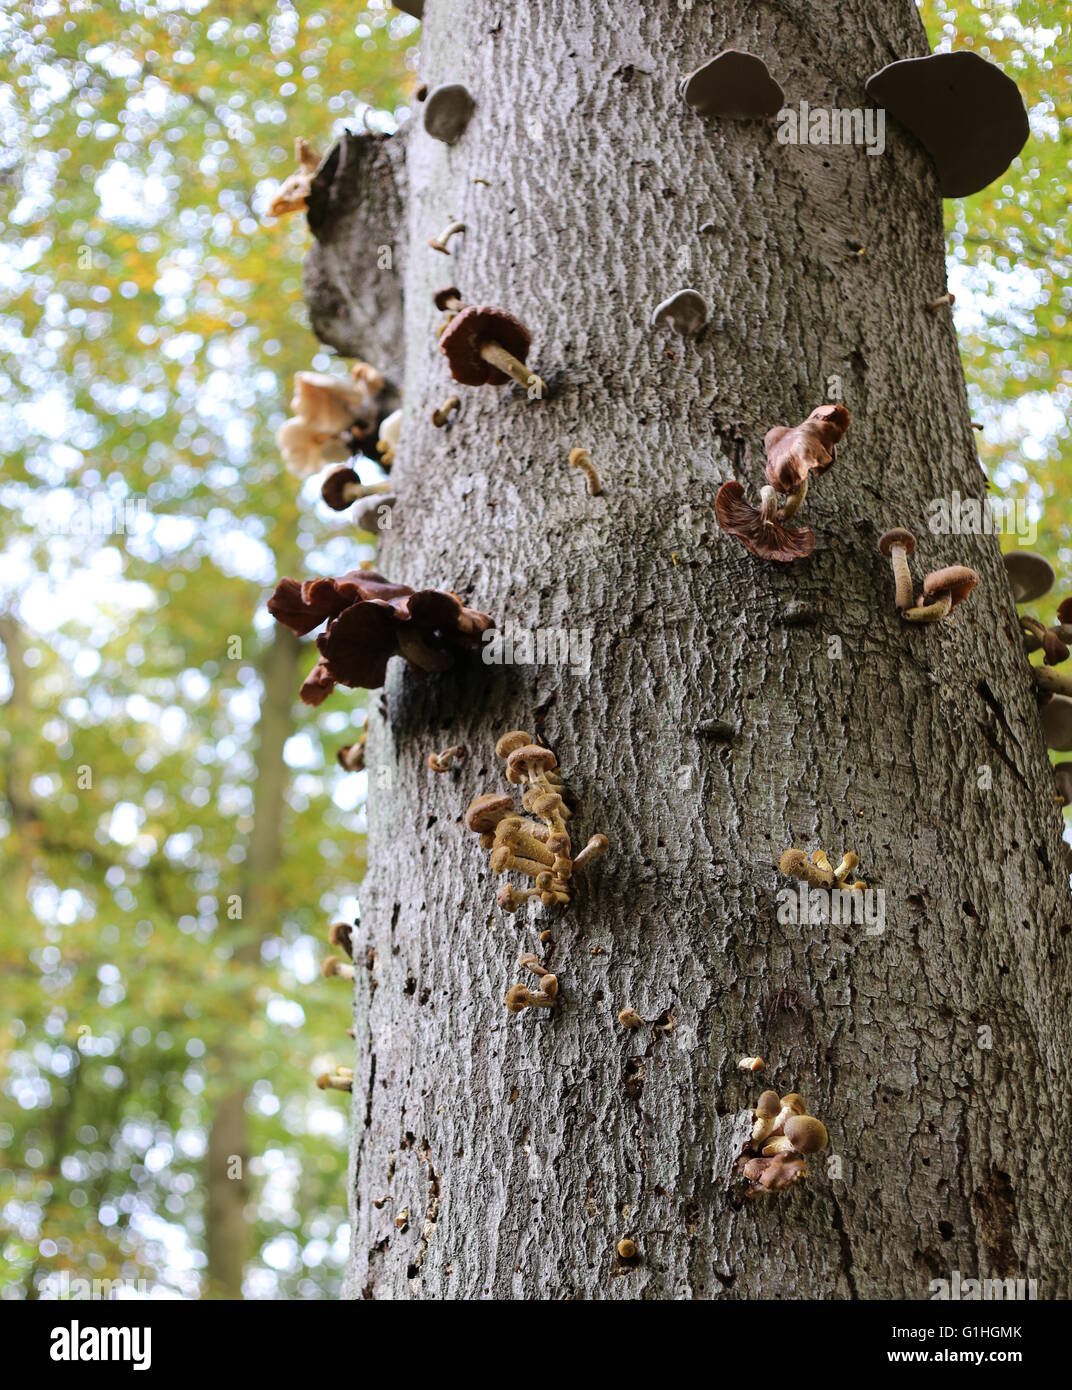 Varietà di funghi parasity su uno stelo in una foresta tedesca. Ad esempio il miele funghi, porcellana funghi e tinder funghi può essere visto. Foto Stock